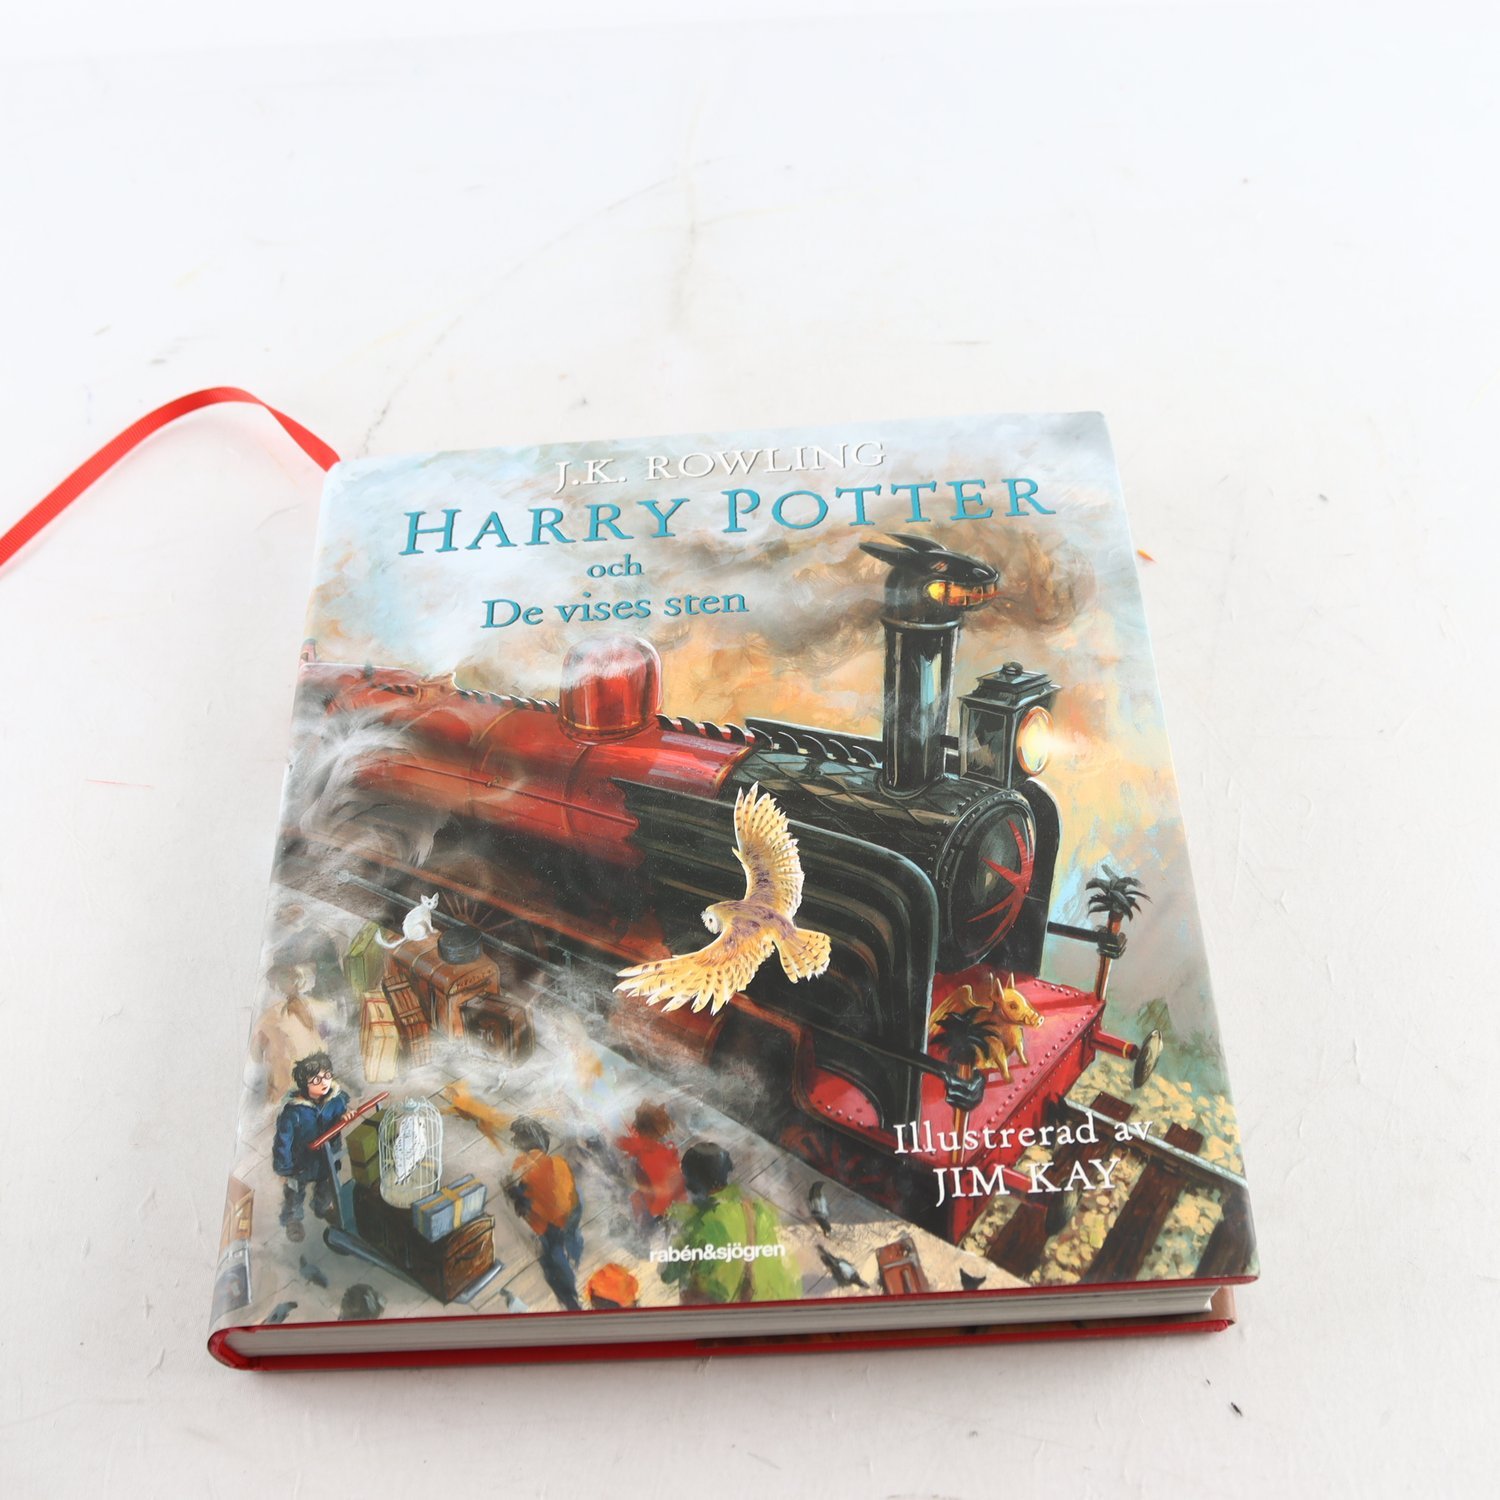 Harry Potter och De vises sten, Illustrerad av Jim Kay